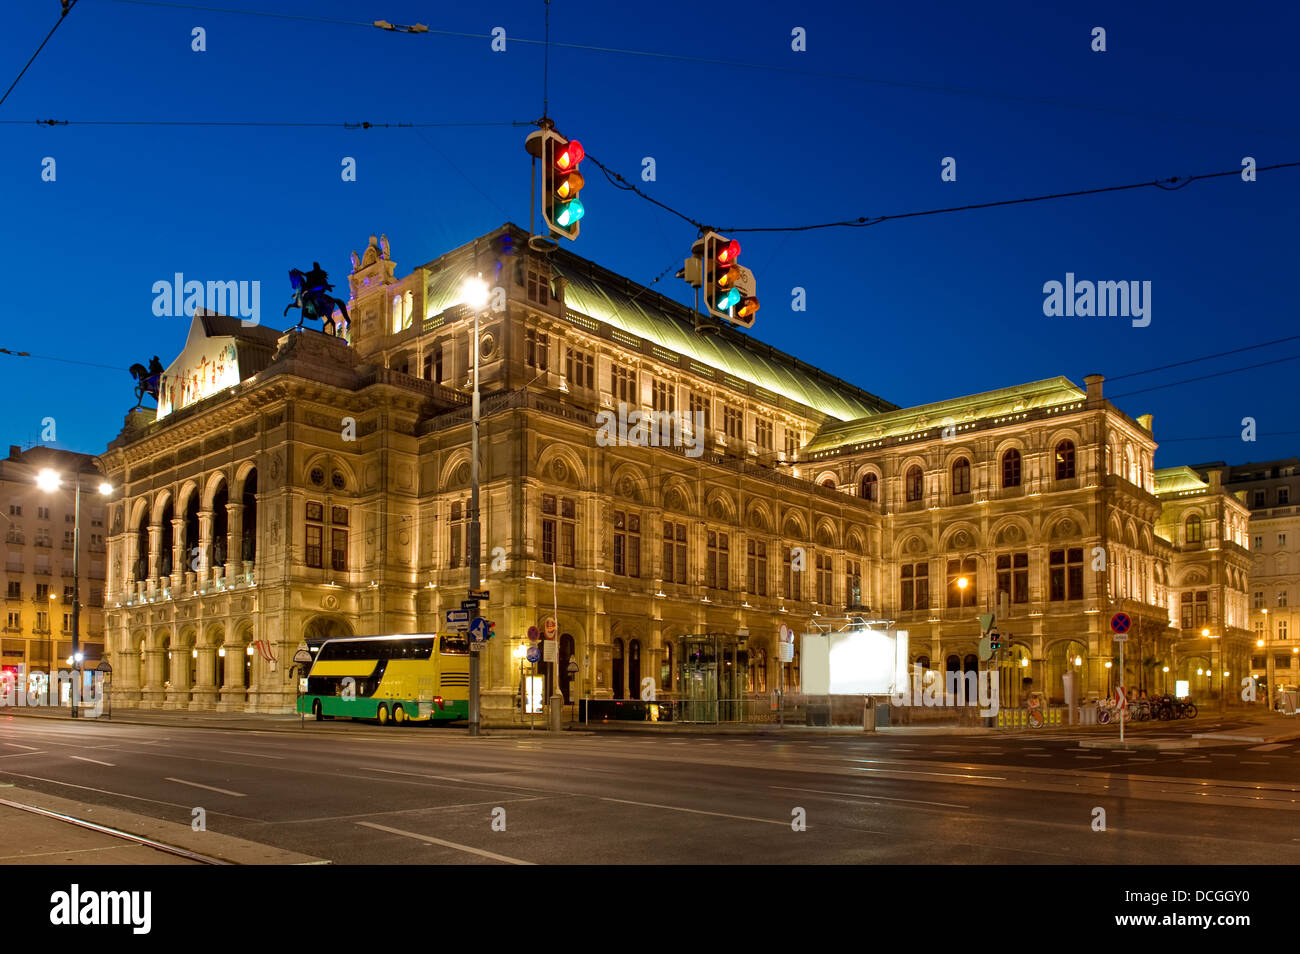 Staatsoper, Viennas grand Opera House at night Stock Photo